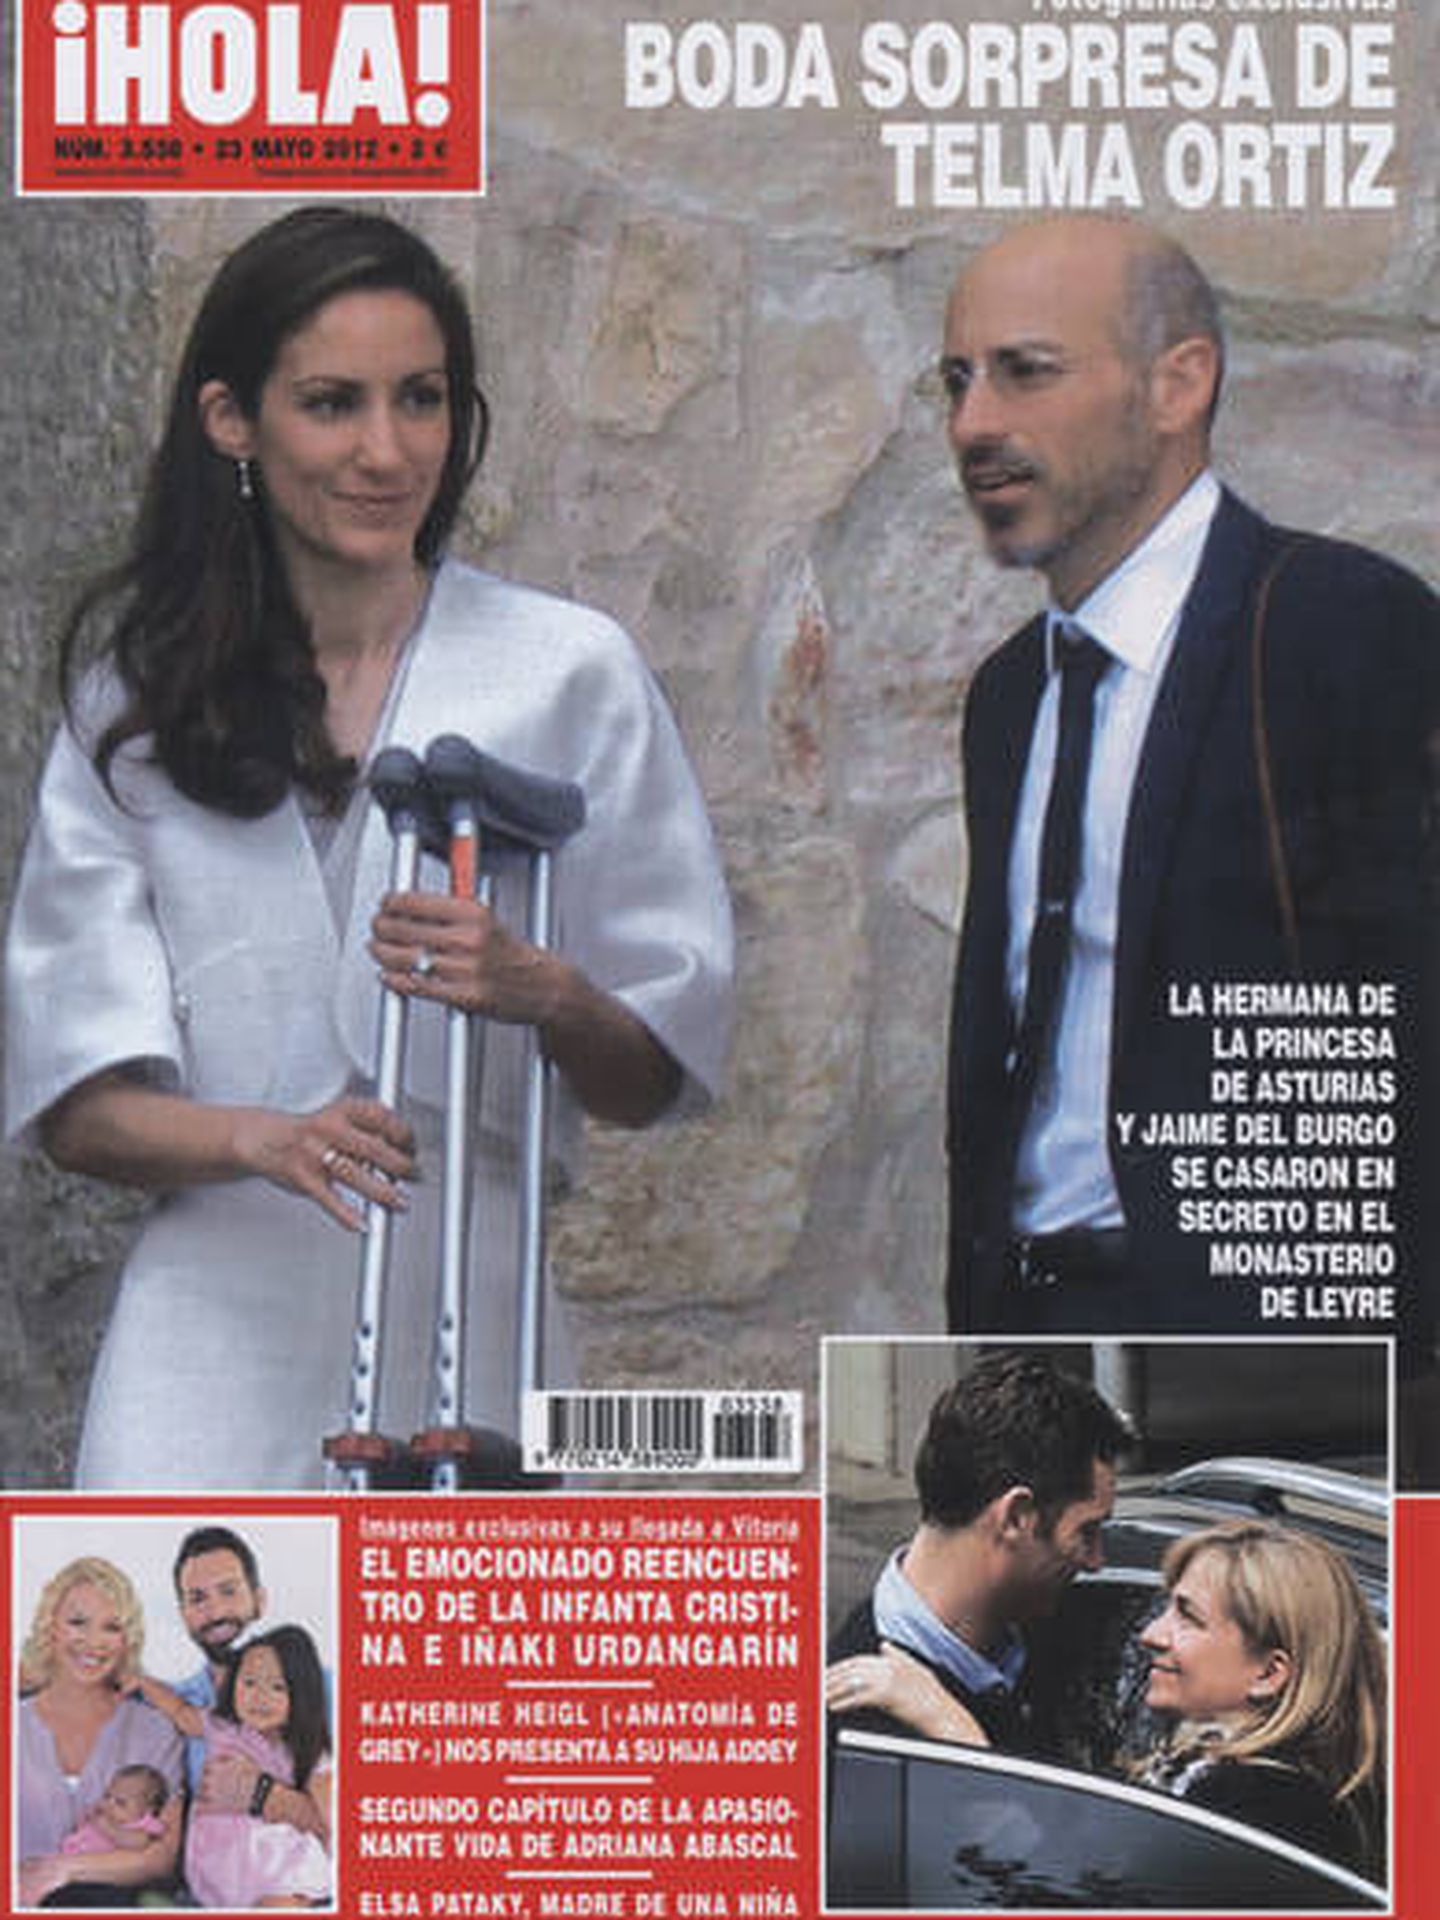 Portada de la revista '¡Hola!' con la boda de Telma Ortiz y Jaime del Burgo.